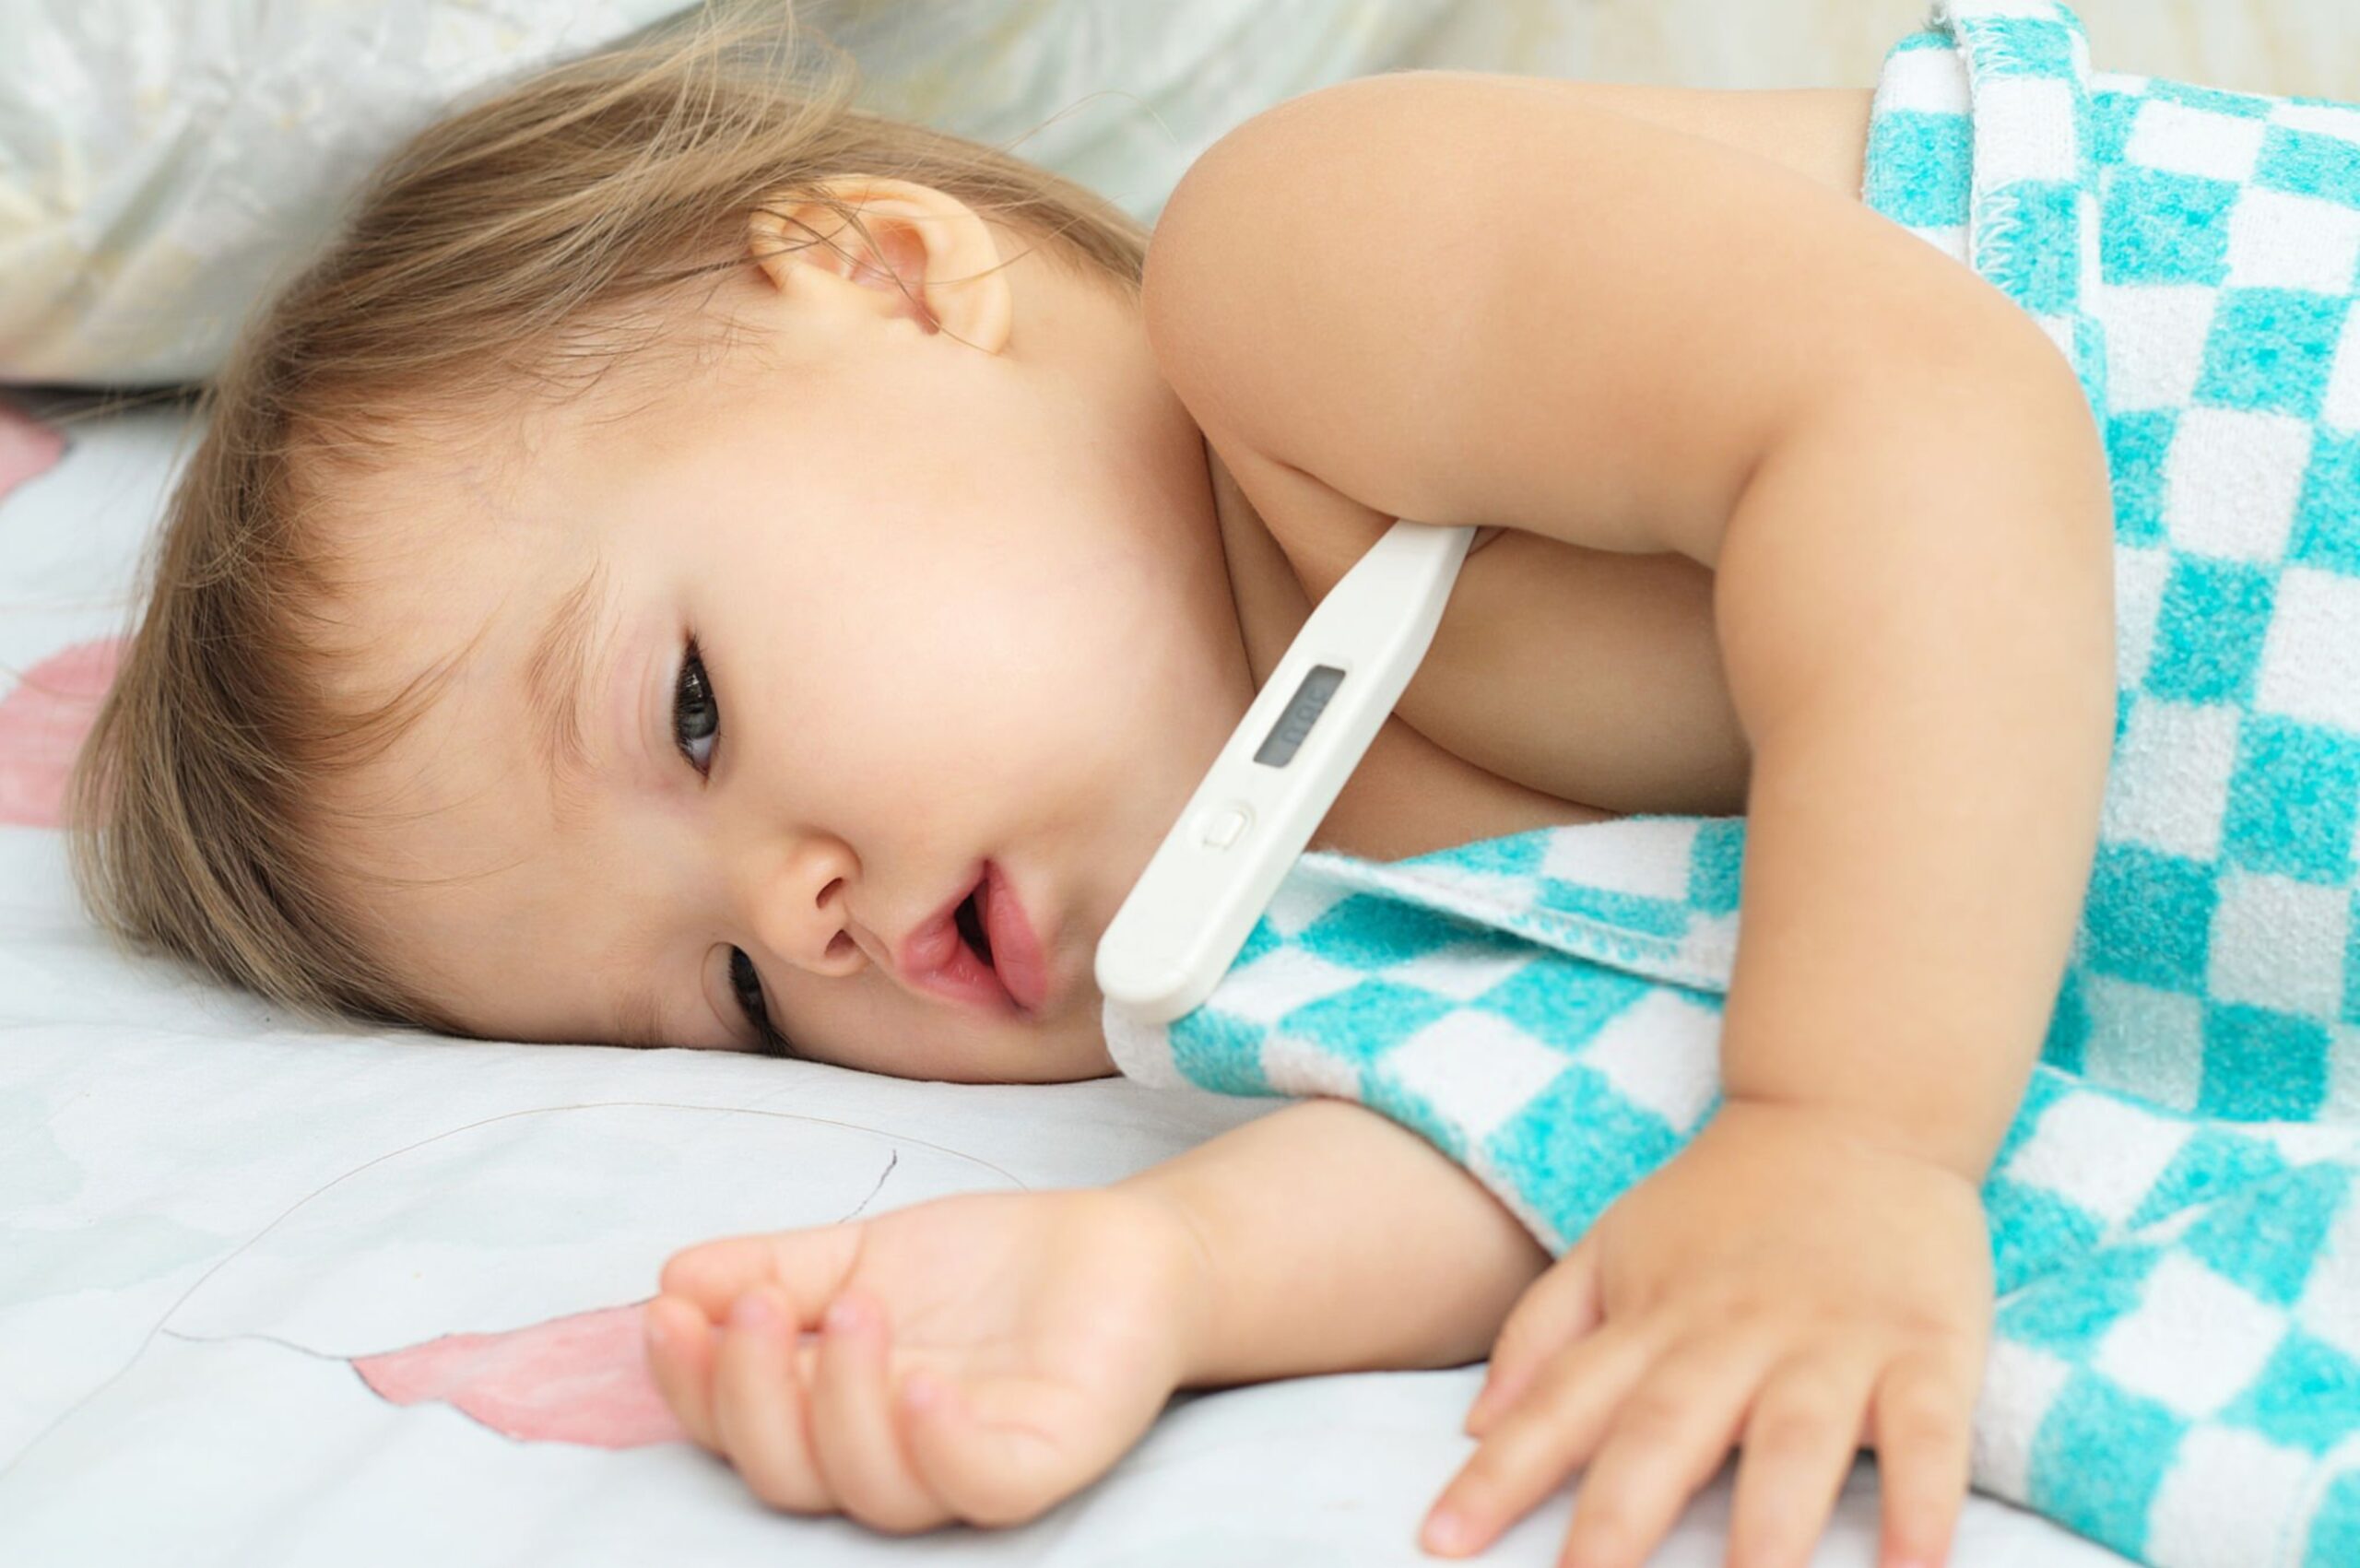 تب ناشی از اسهال و کم آبی بدن در کودکان خطرناک است